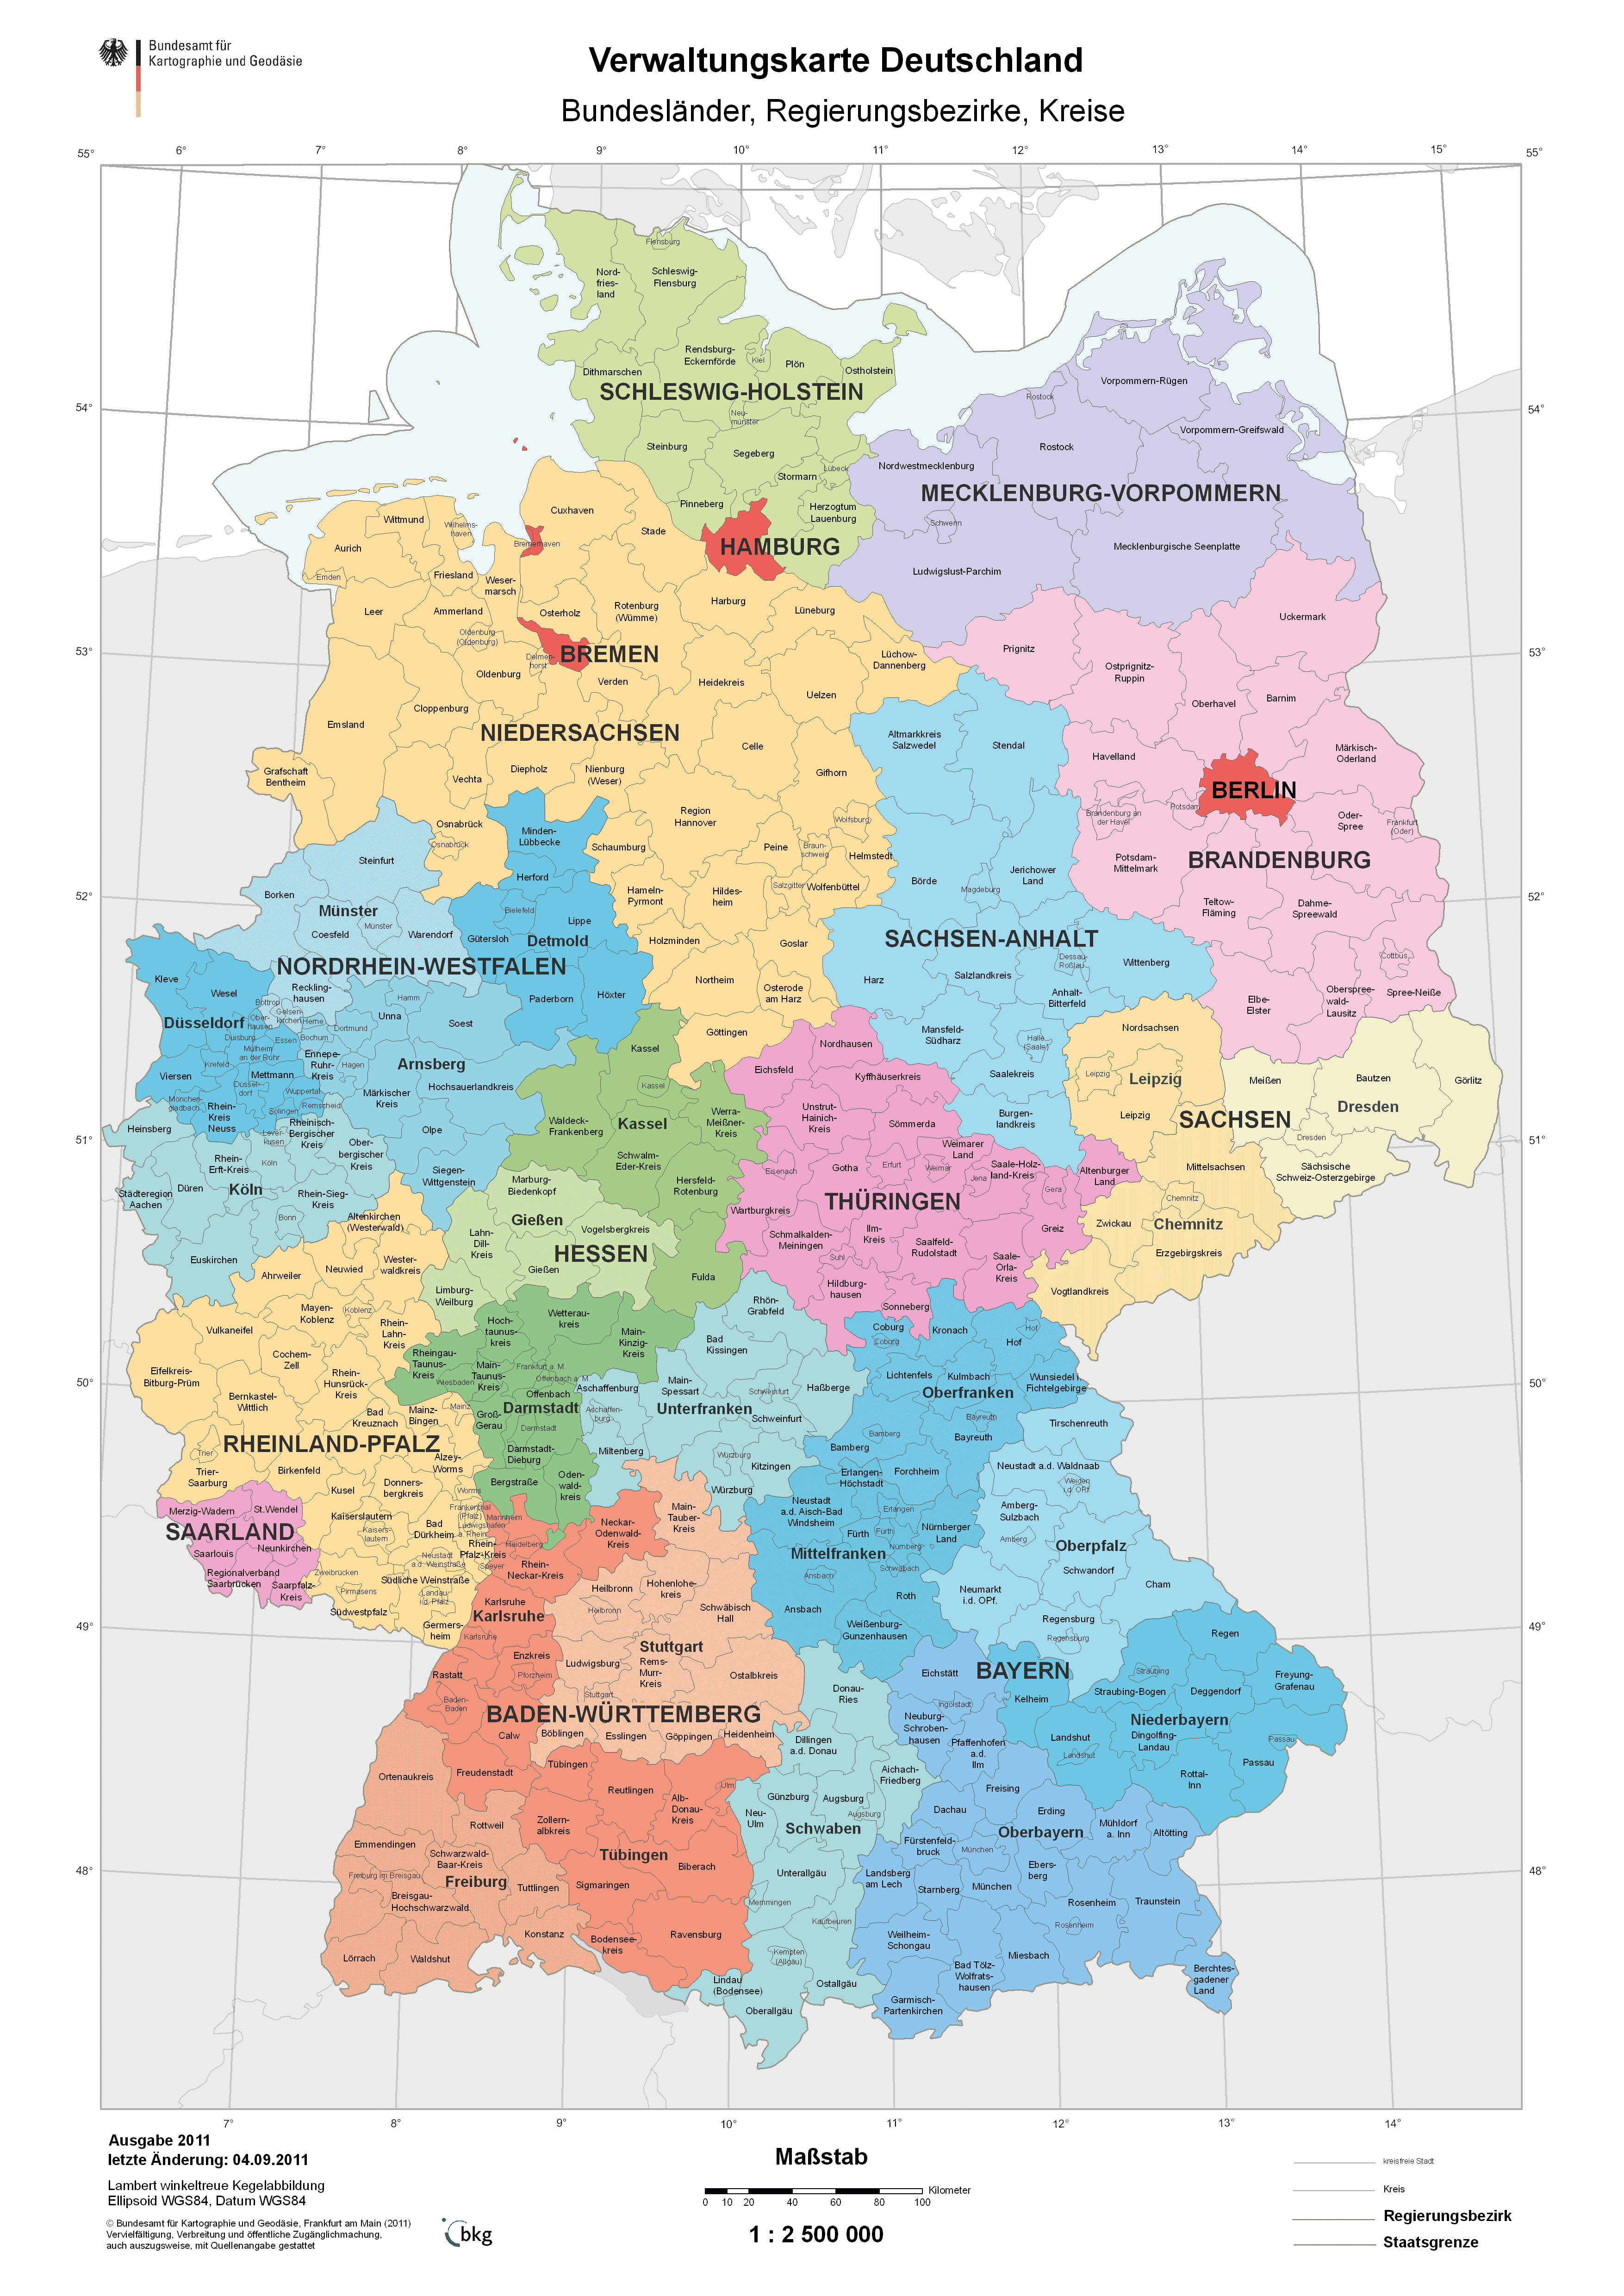 Деление германии на регионы саксония в 18 веке